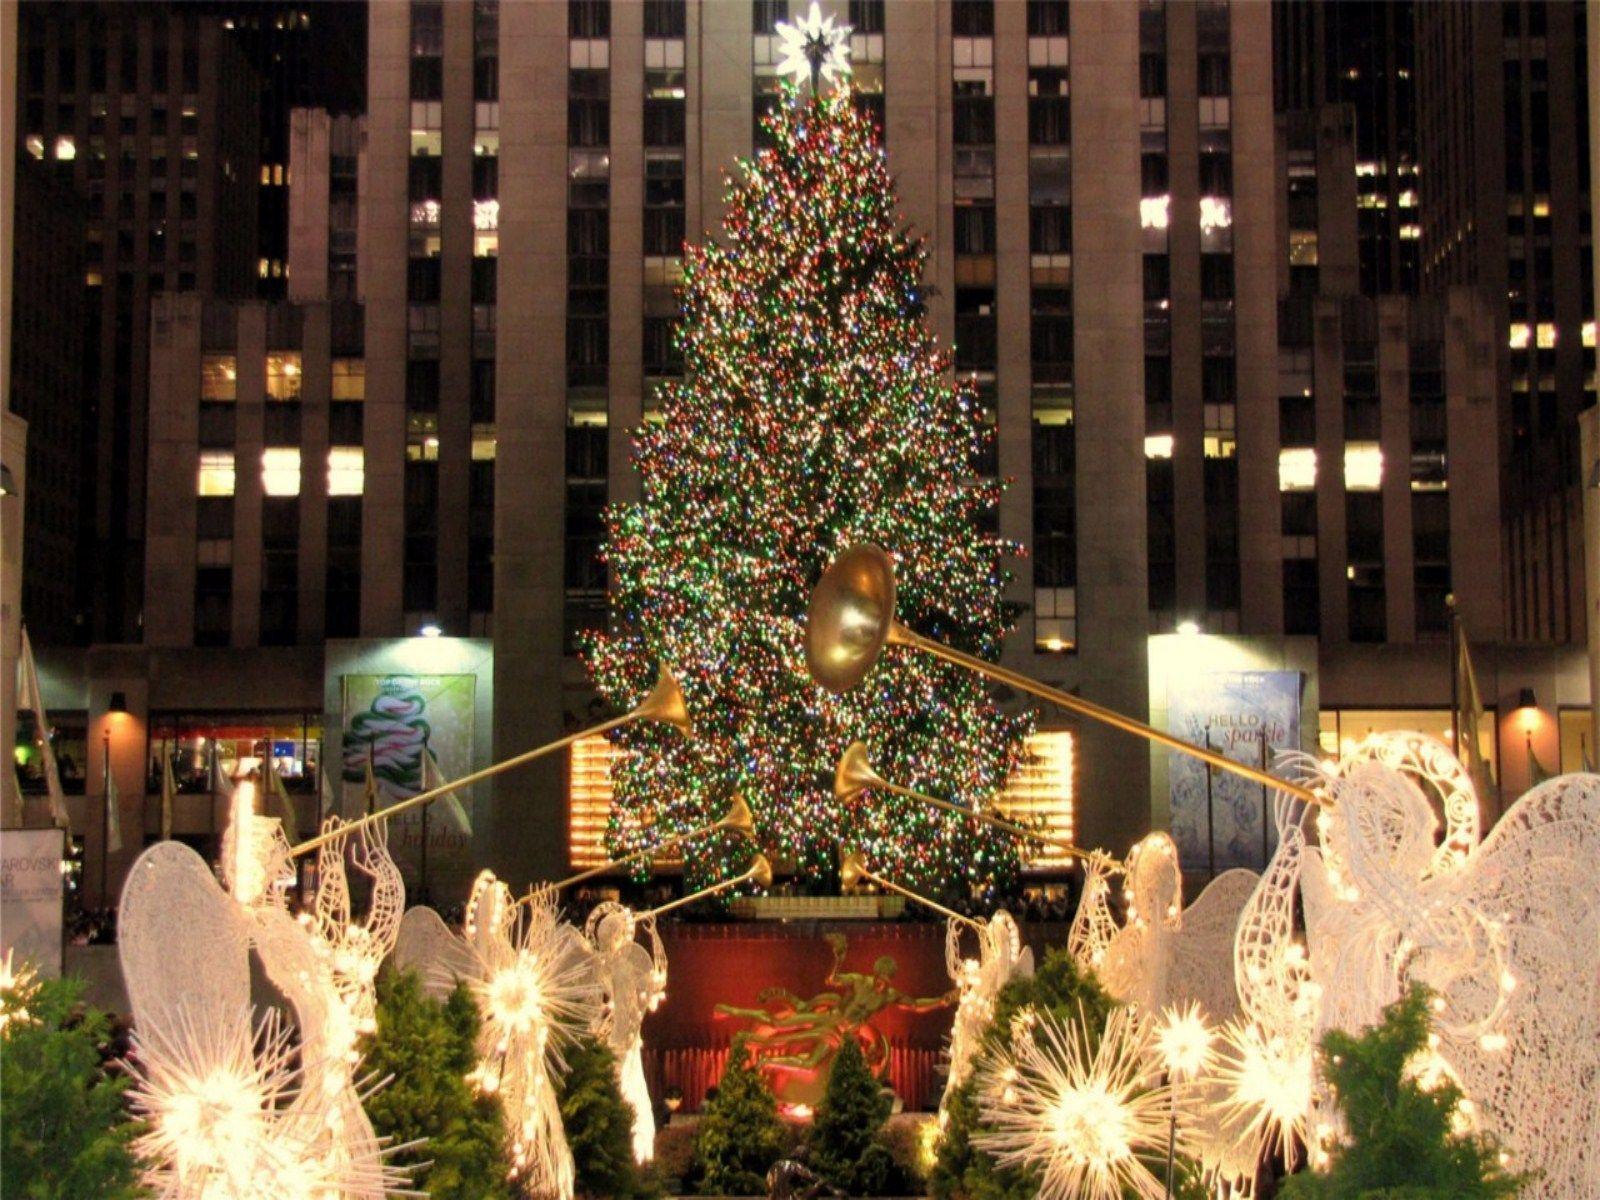 Rockefeller Center Christmas Wallpaper Free